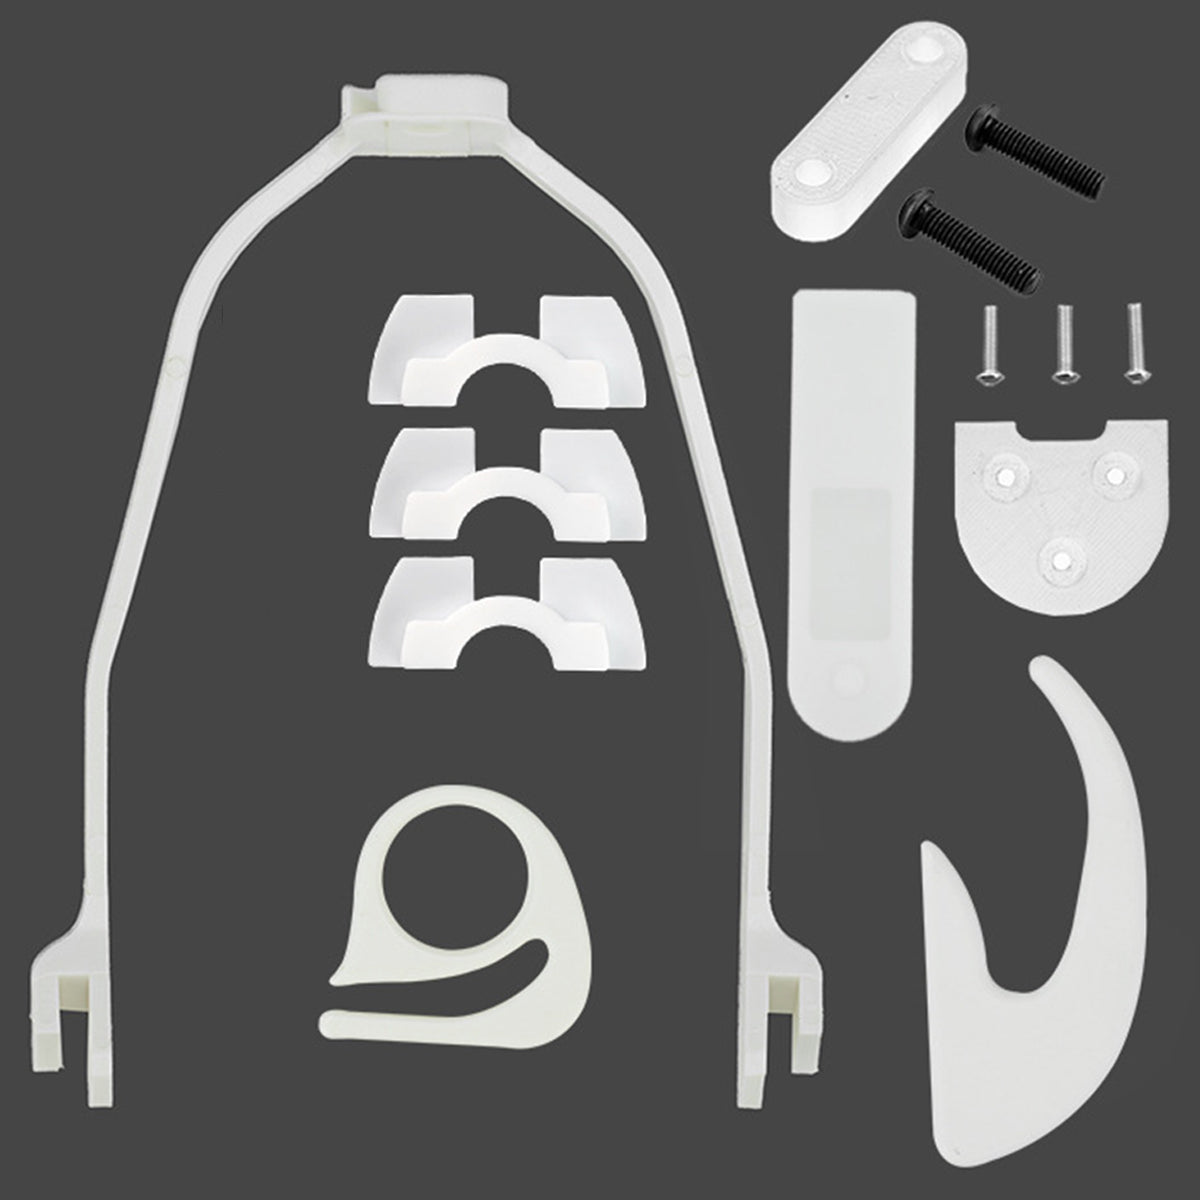 14Pcs Scooter Accessories Kits Dash Cover Mudguard Set For M365/M187/Pro - Auto GoShop